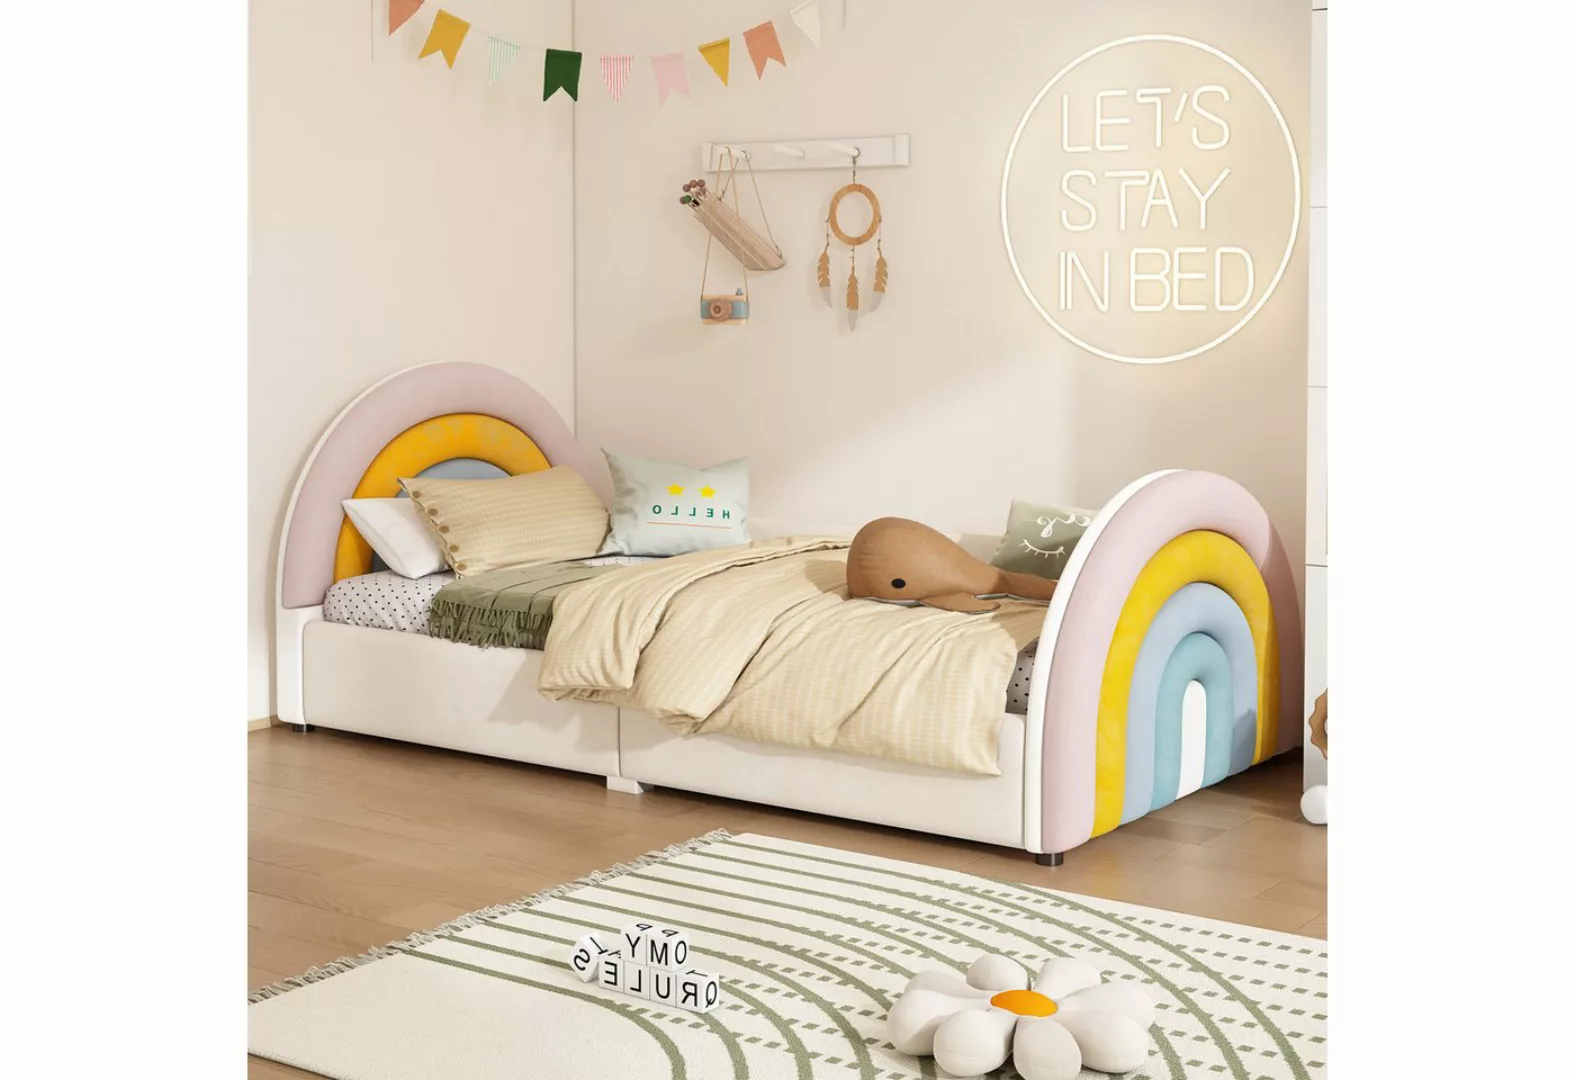 Flieks Polsterbett, Kinderbett 90x200cm mit Regenbogenform und hochklappbar günstig online kaufen